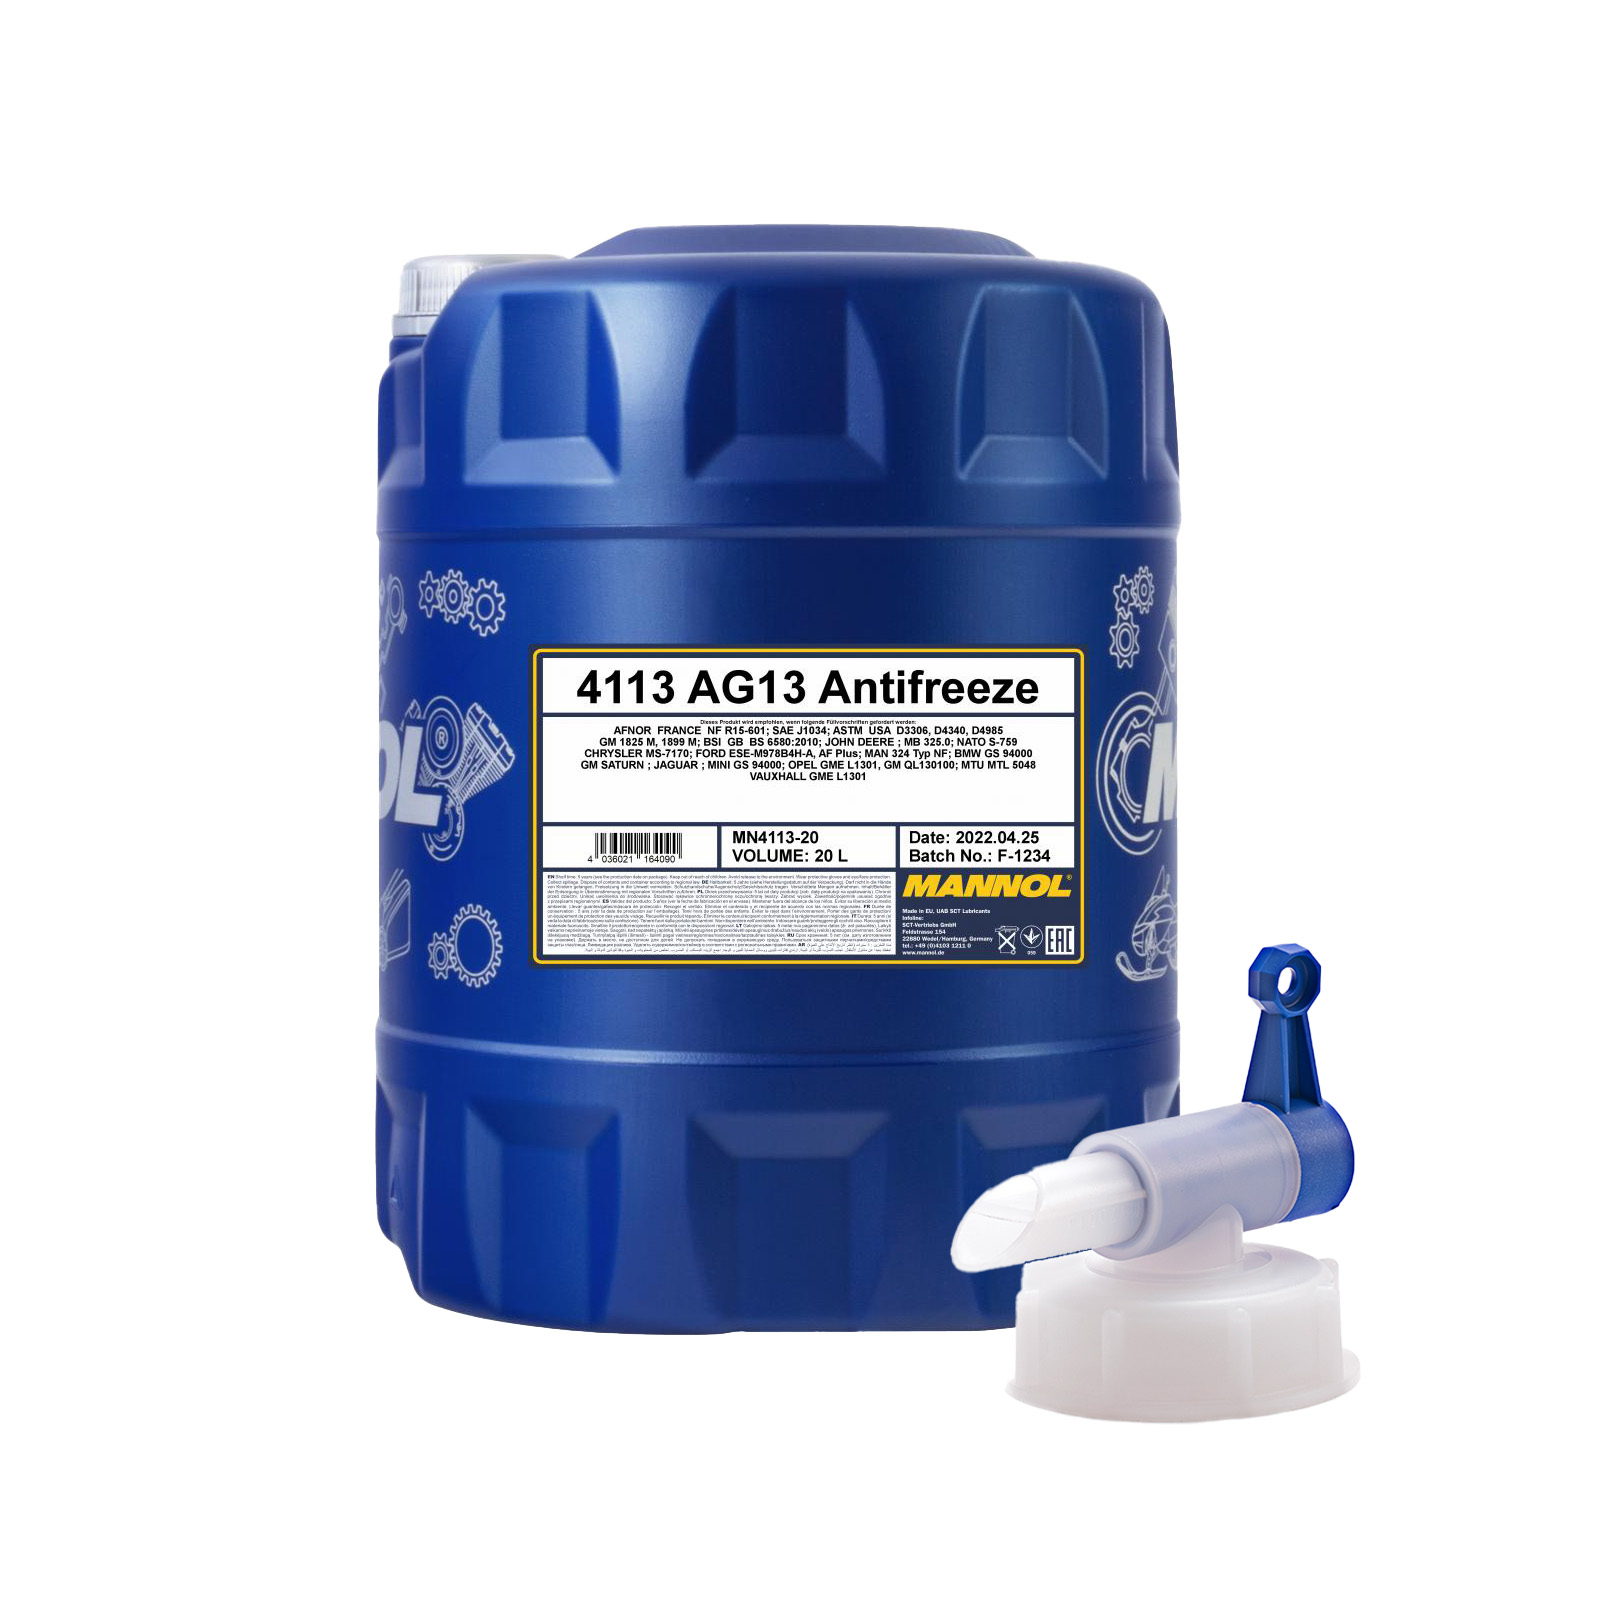 20 Liter MANNOL Hightec Antifreeze AG13 Kühlflüssigkeit 1x Ablasshahn